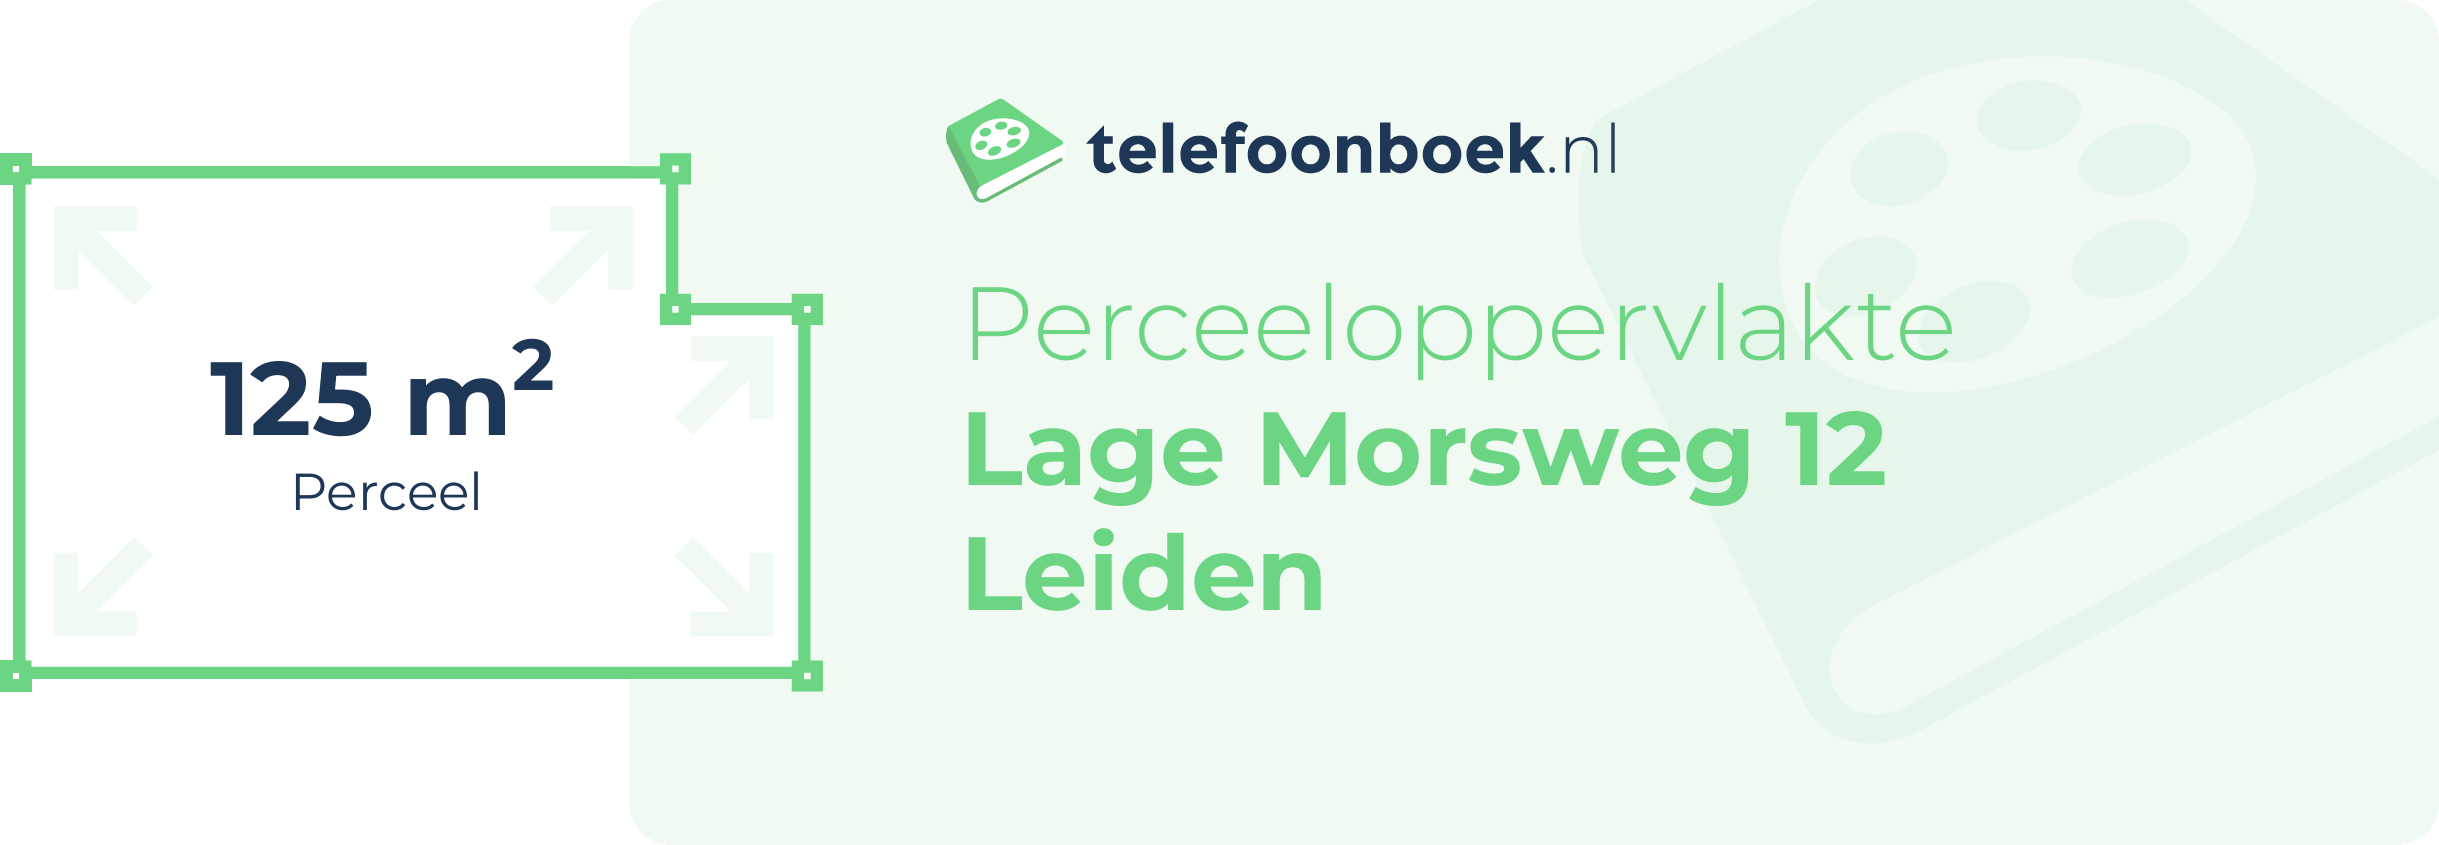 Perceeloppervlakte Lage Morsweg 12 Leiden